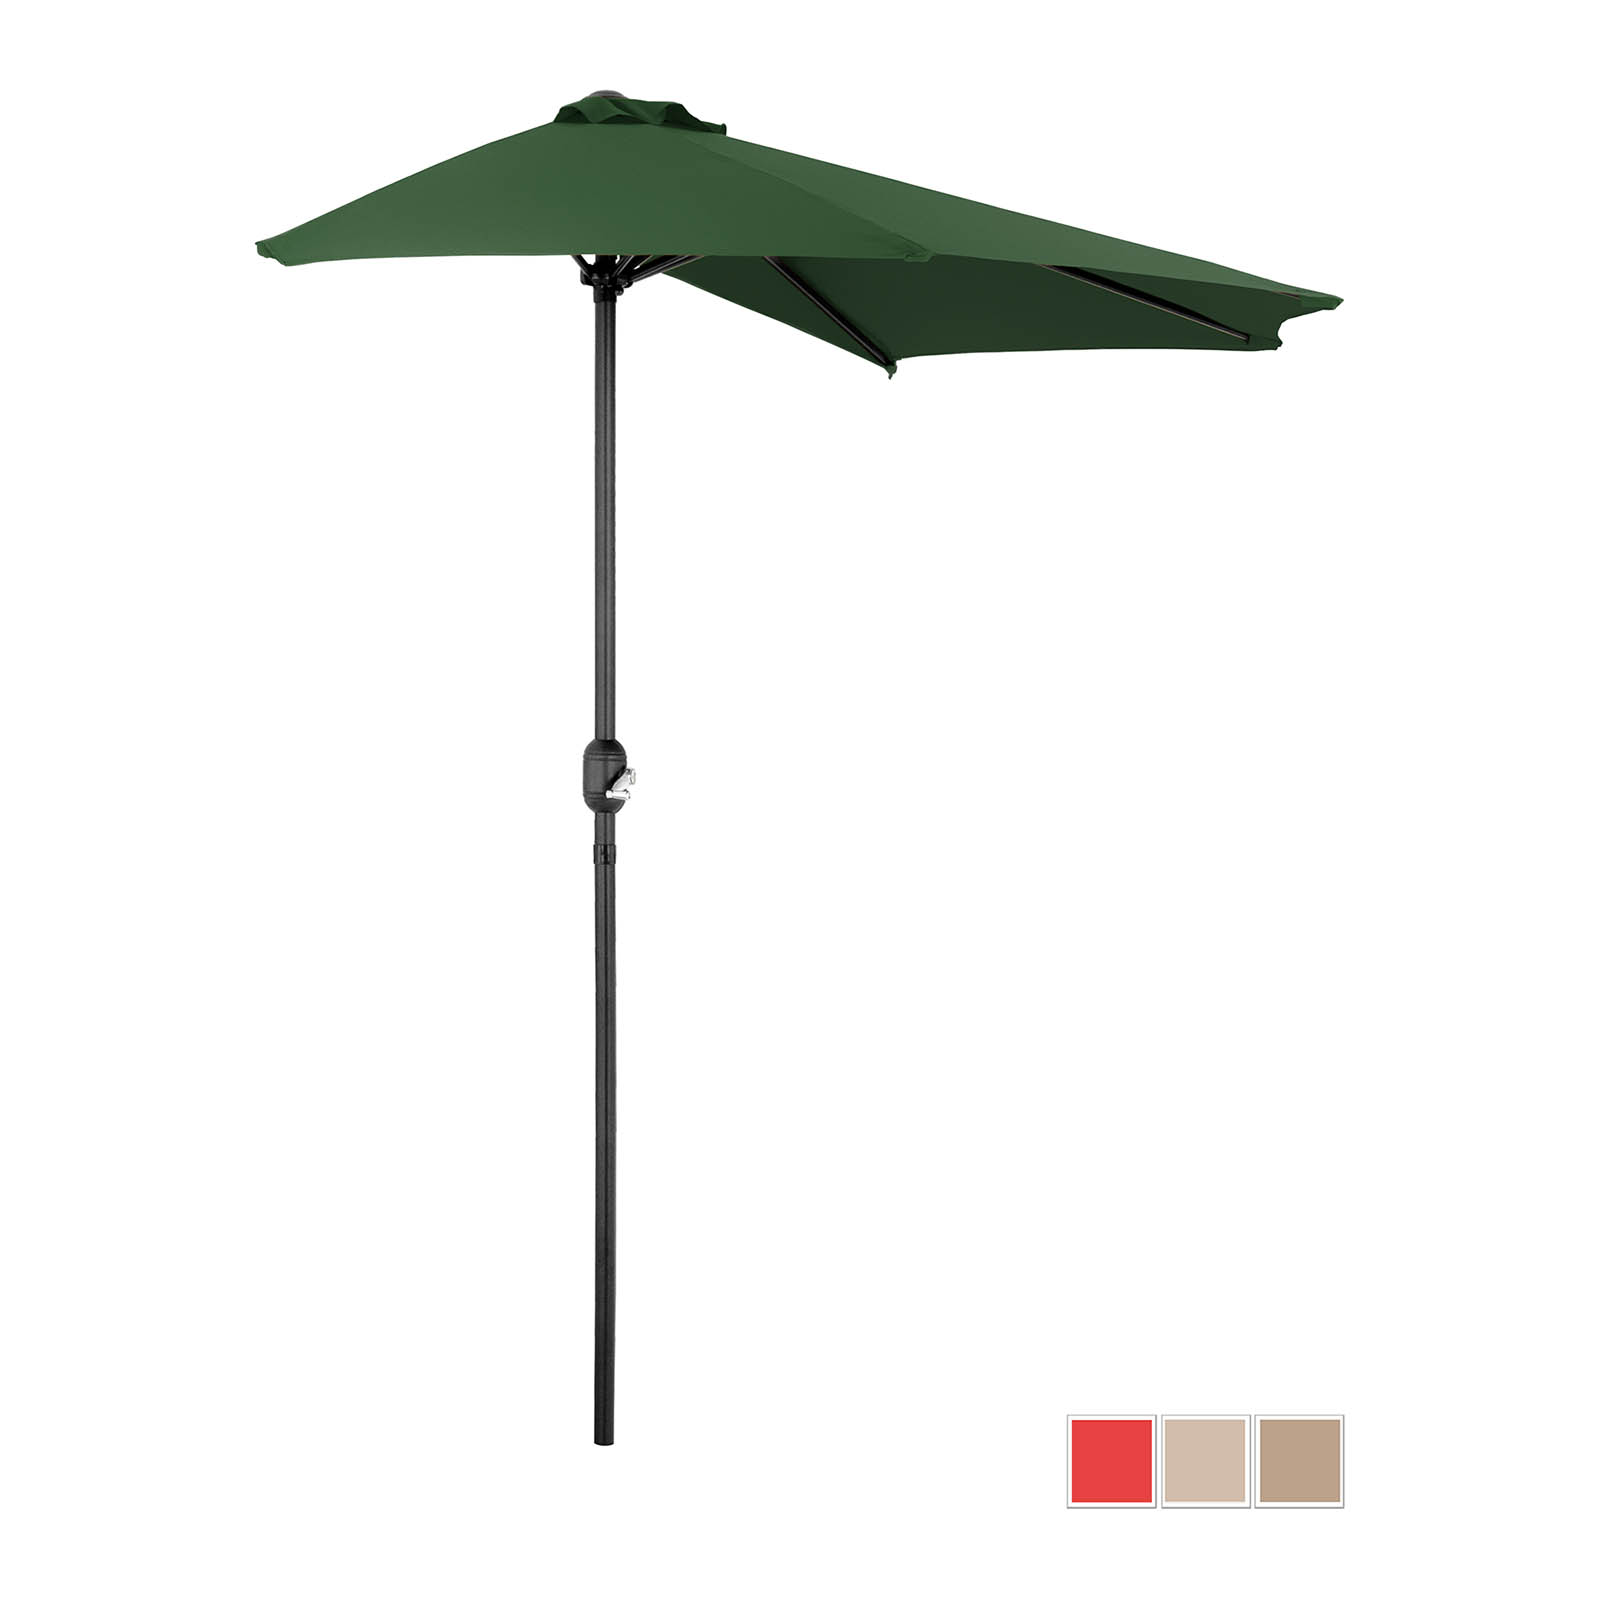 Halv paraply - grønn - femkantet - 270 x 135 cm